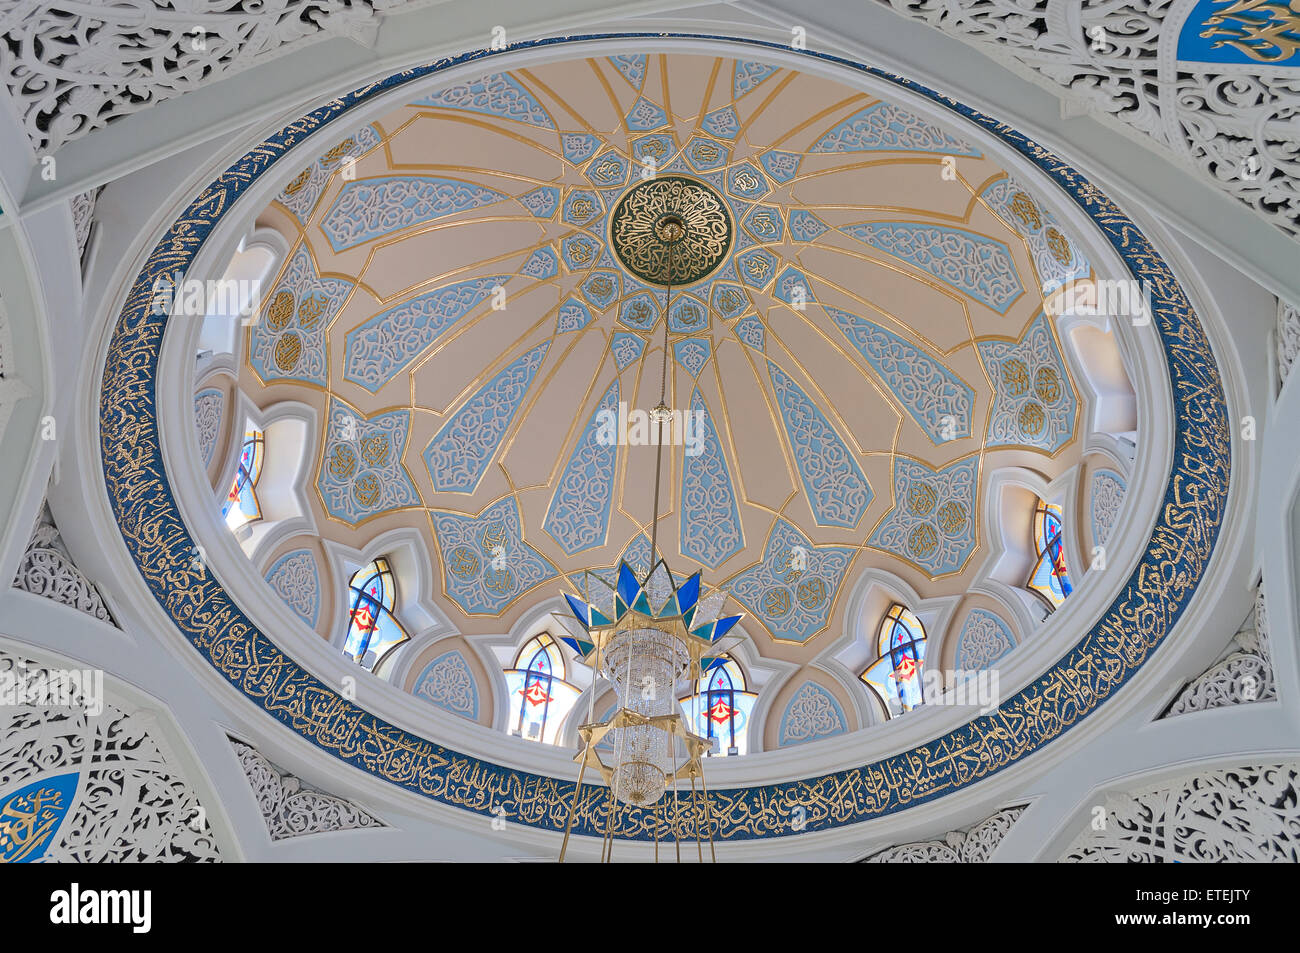 La mosquée Kul Sharif à Kazan Kremlin. La Russie. Banque D'Images